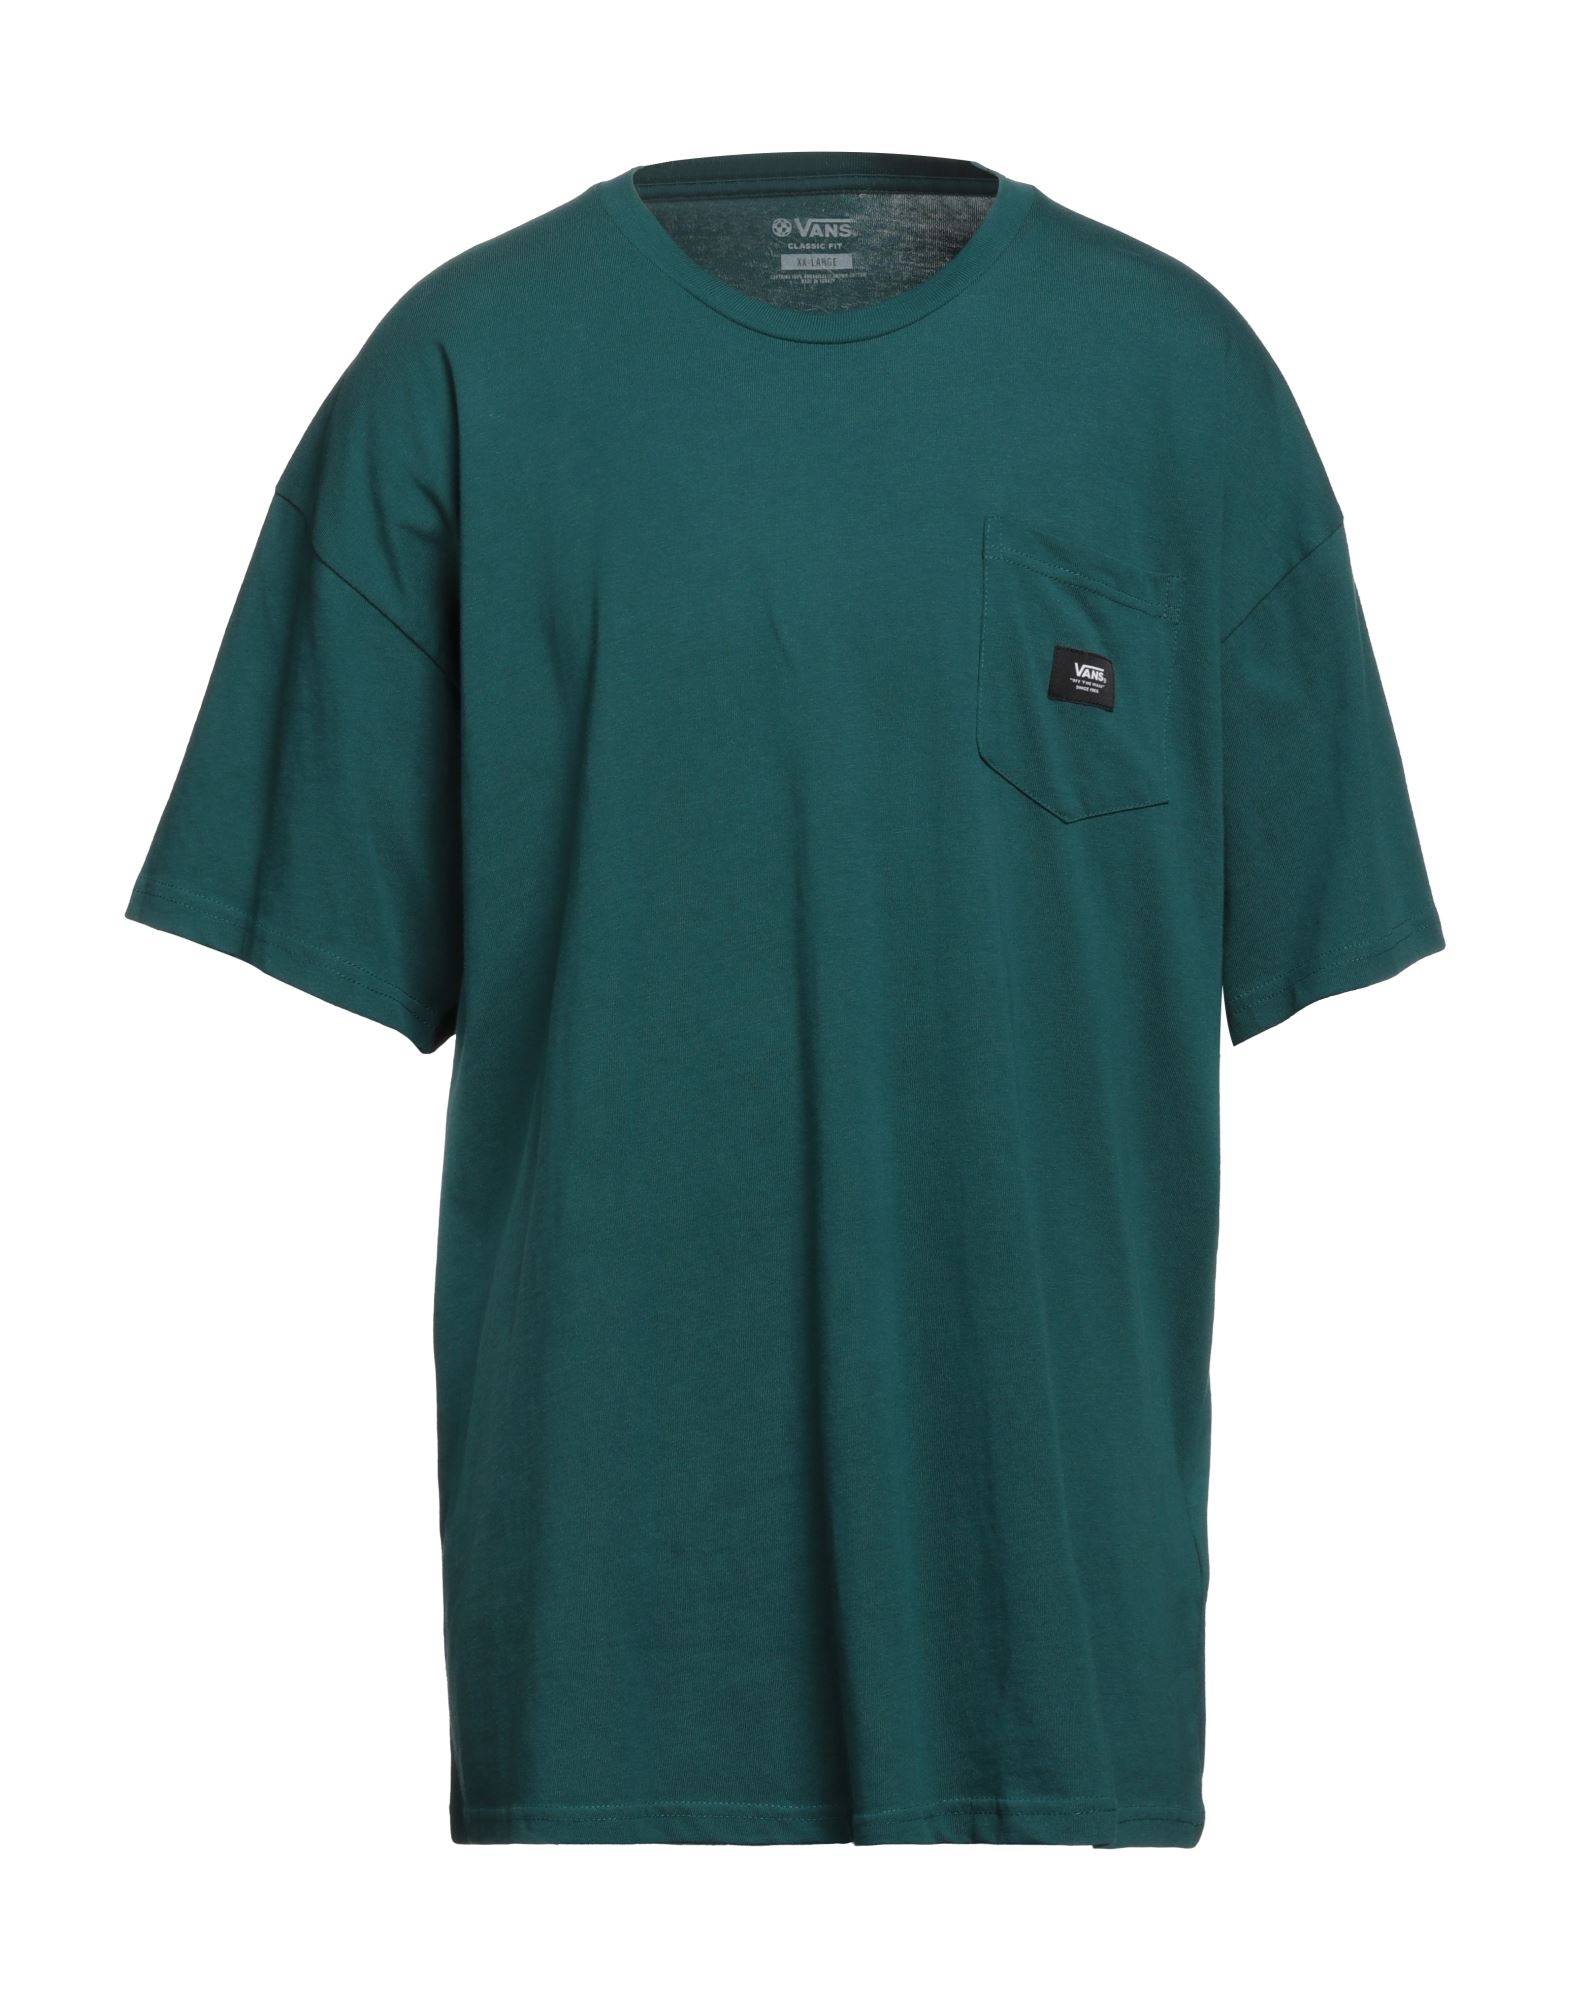 Vans Mn Woven Patch Pocket M Man T-shirt Deep Jade Size Xl Cotton In Green